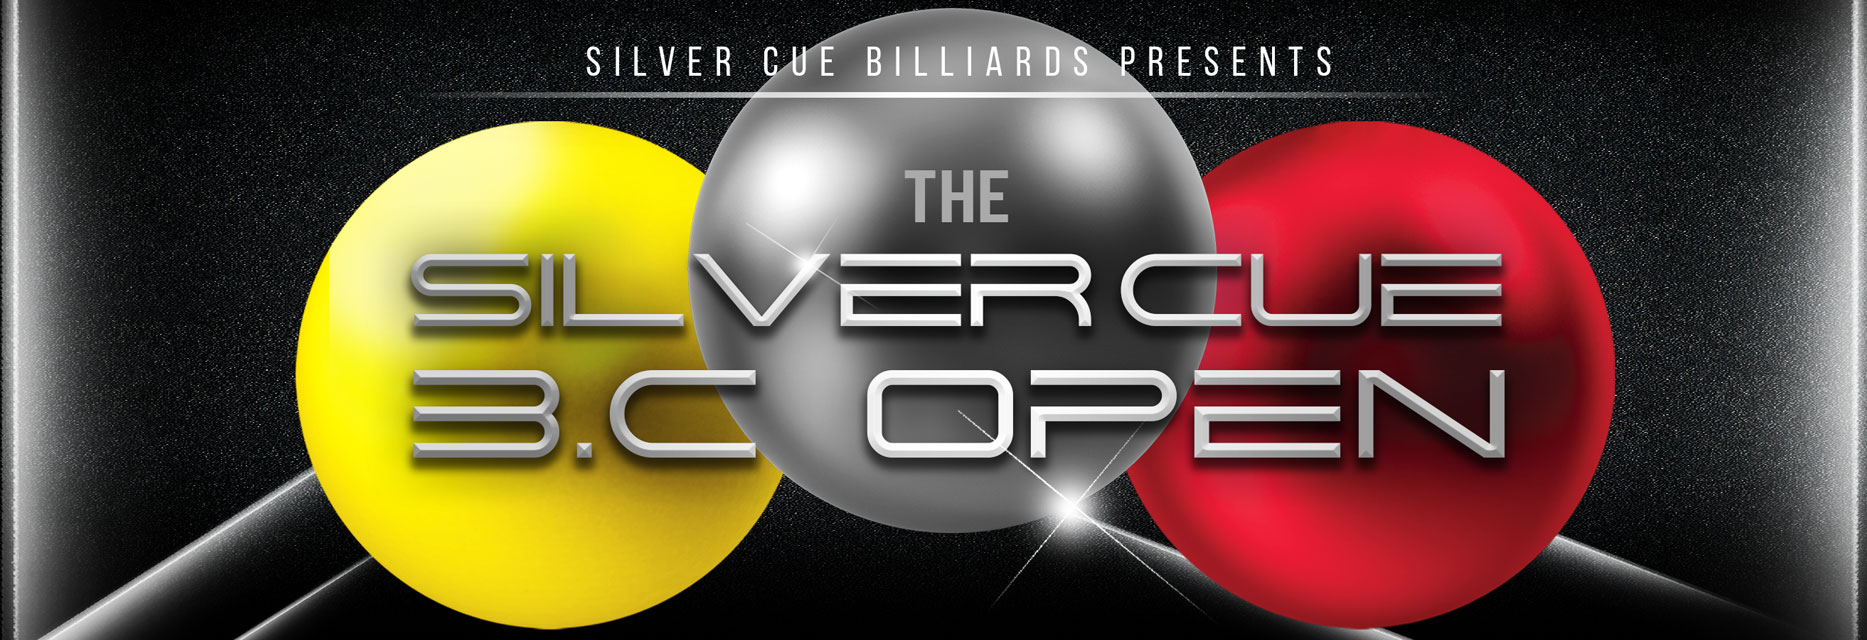 The Silver Cue 3.C Open